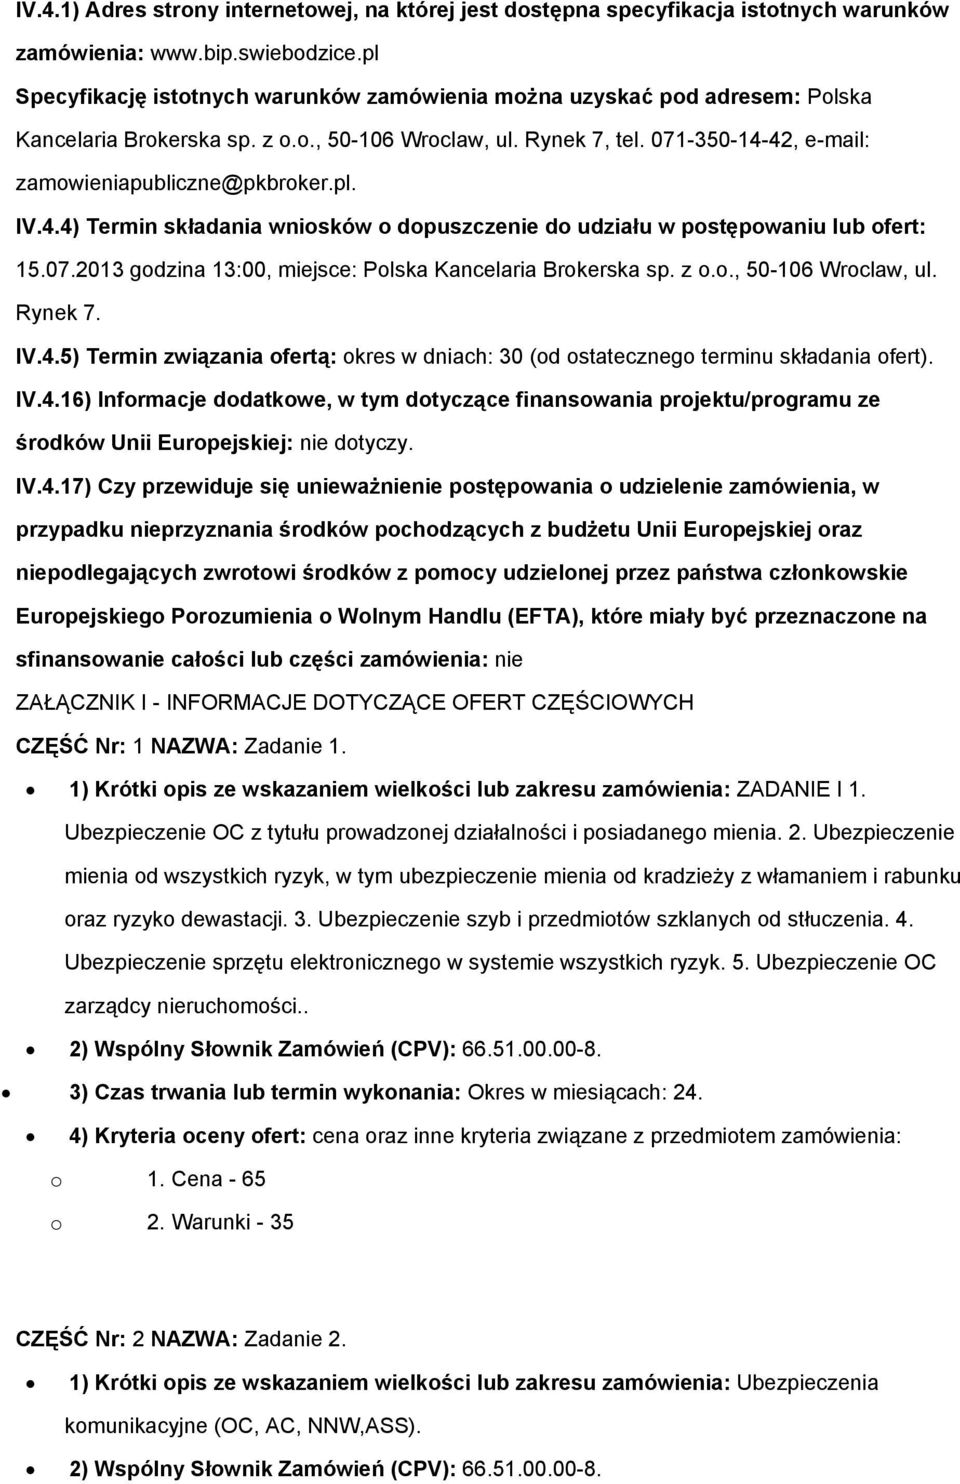 42, e-mail: zamwieniapubliczne@pkbrker.pl. IV.4.4) Termin składania wnisków dpuszczenie d udziału w pstępwaniu lub fert: 15.07.2013 gdzina 13:00, miejsce: Plska Kancelaria Brkerska sp. z.., 50-106 Wrclaw, ul.